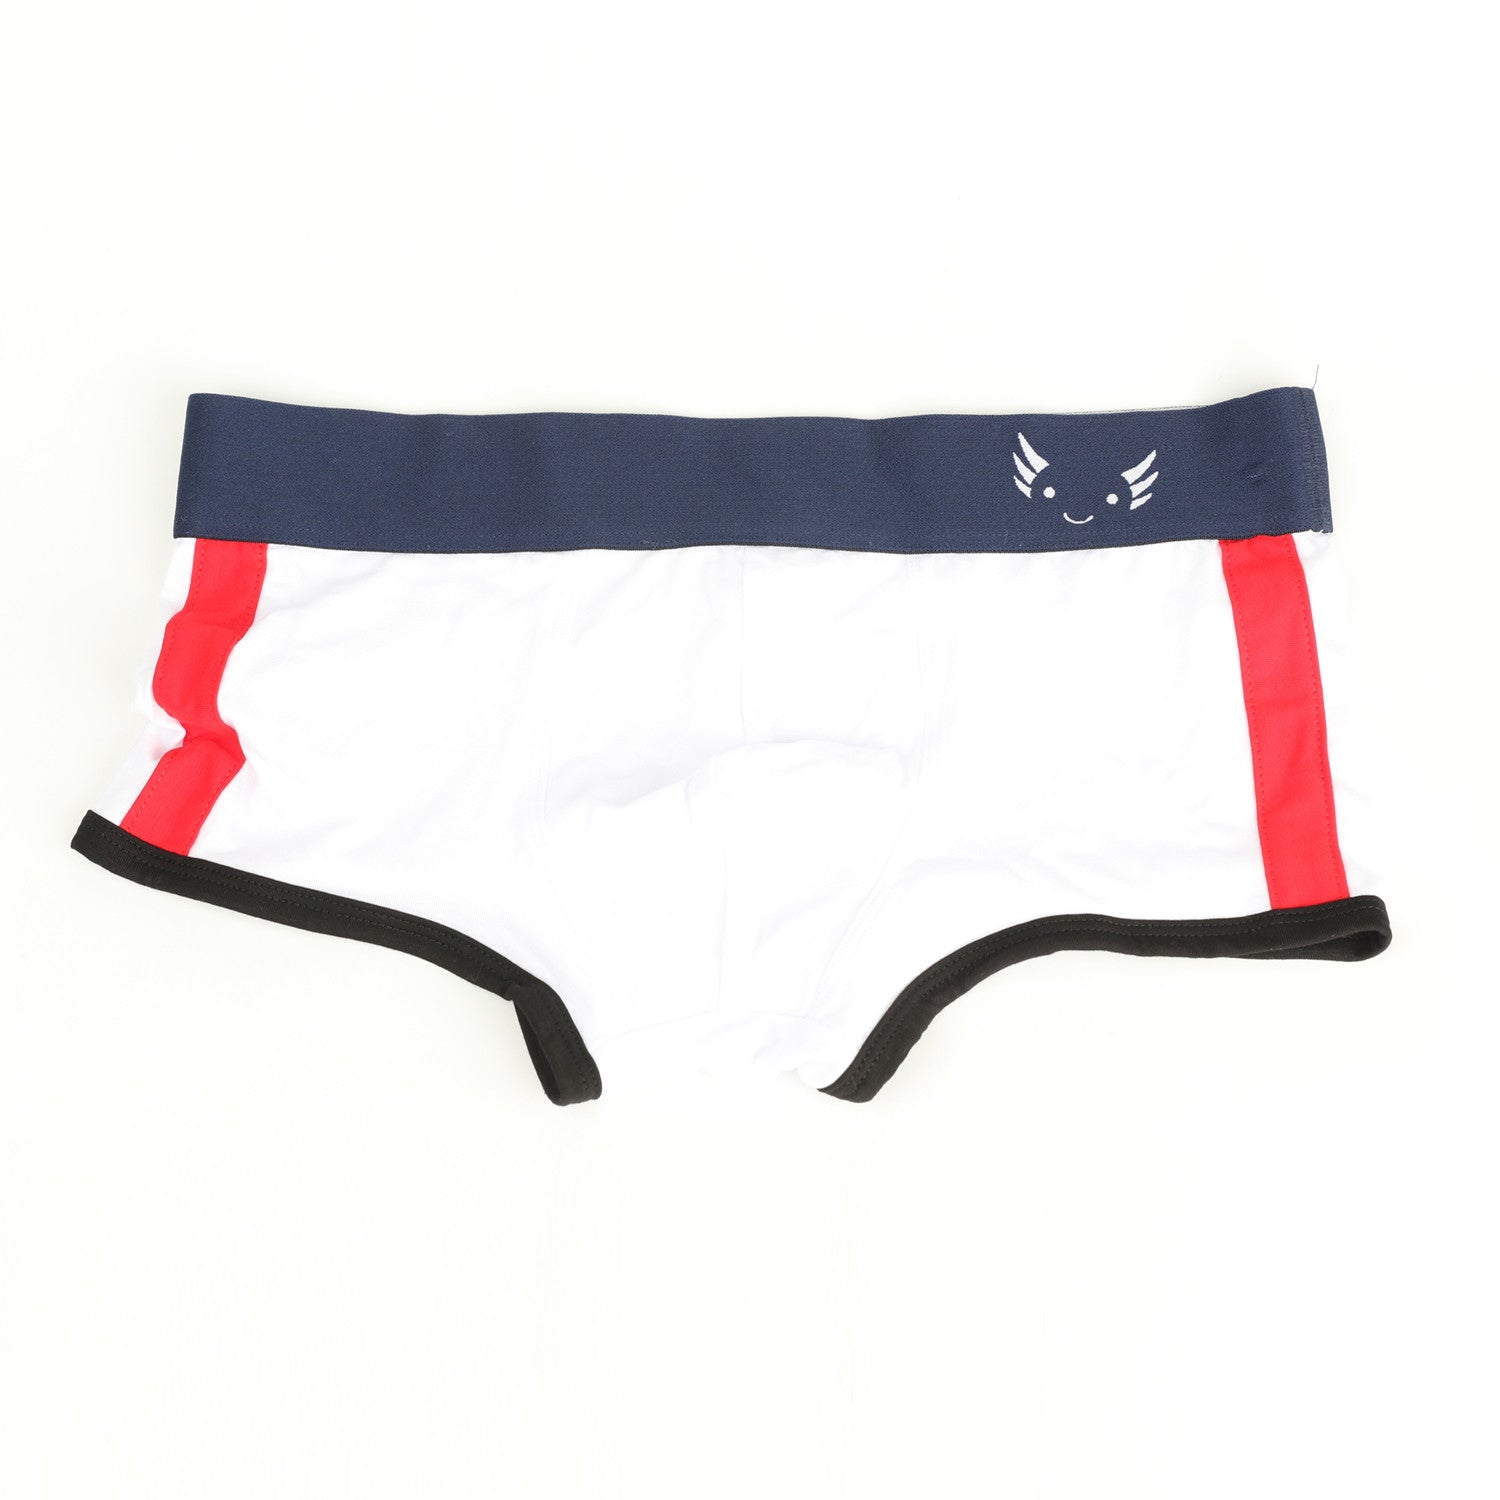 https://buytmart.com/cdn/shop/products/axolom-ftm-underwear_3.jpg?v=1690596470&width=1946